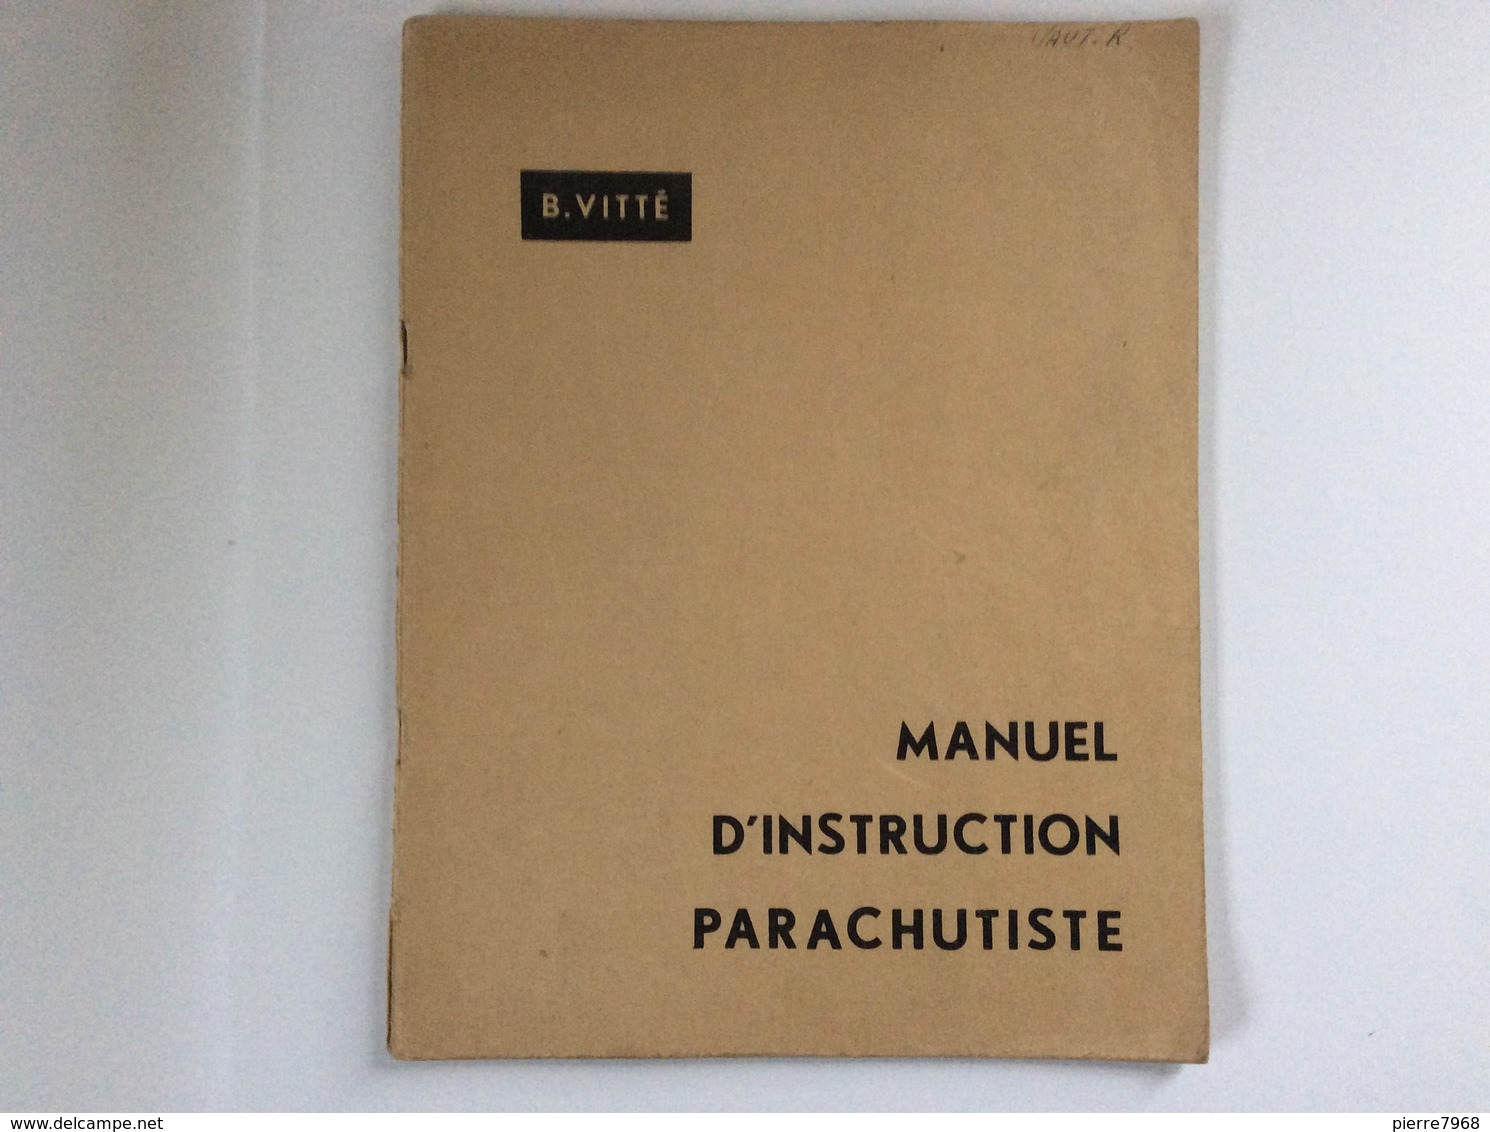 Manuel D'instruction Parachutiste - Bernard Vitté - 1961 - Sport